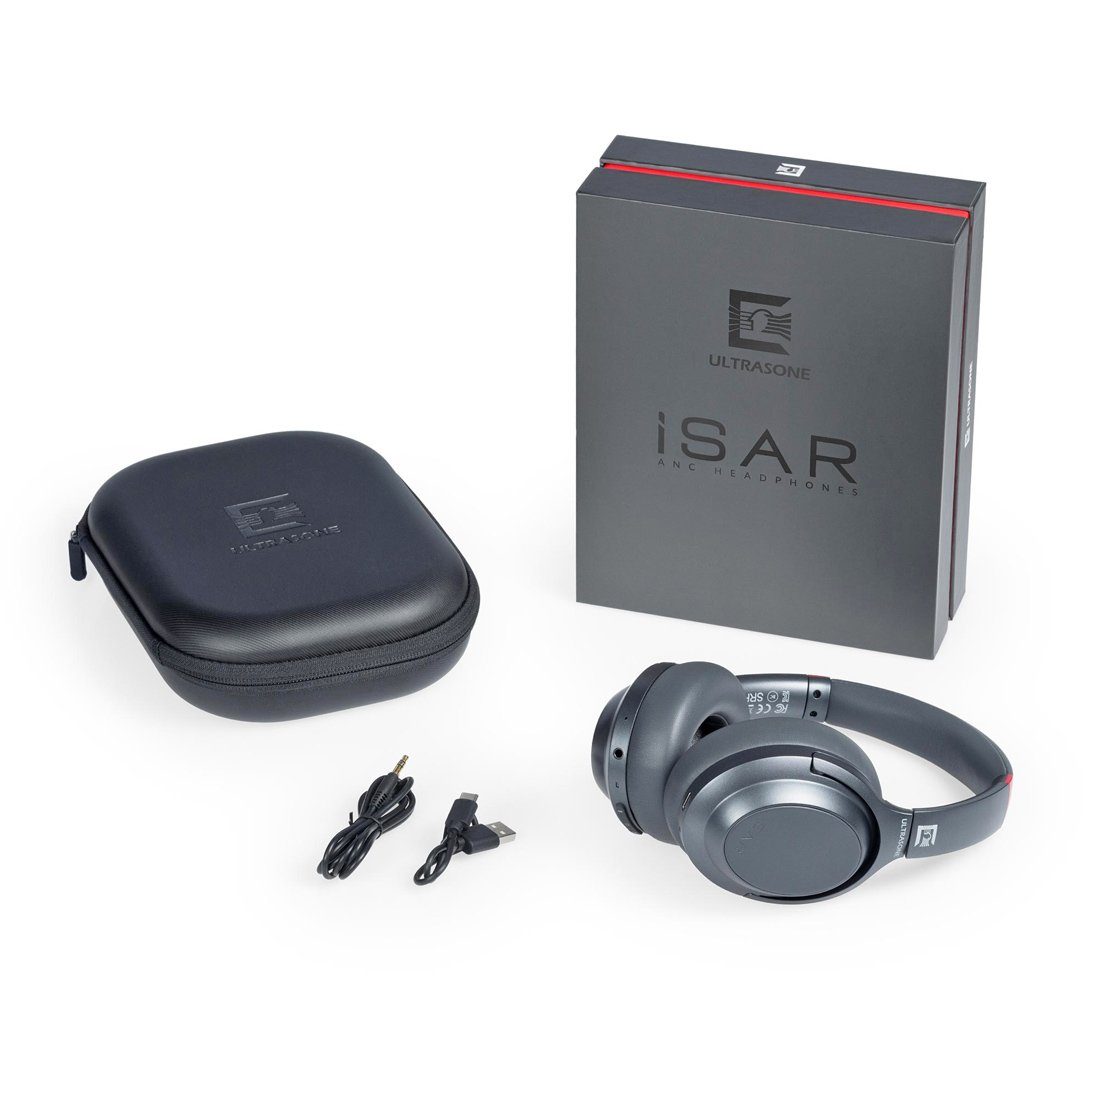 Wandhalter Kopfhörer Ultrasone Kopfhörer ISAR mit Ultrasone Bluetooth